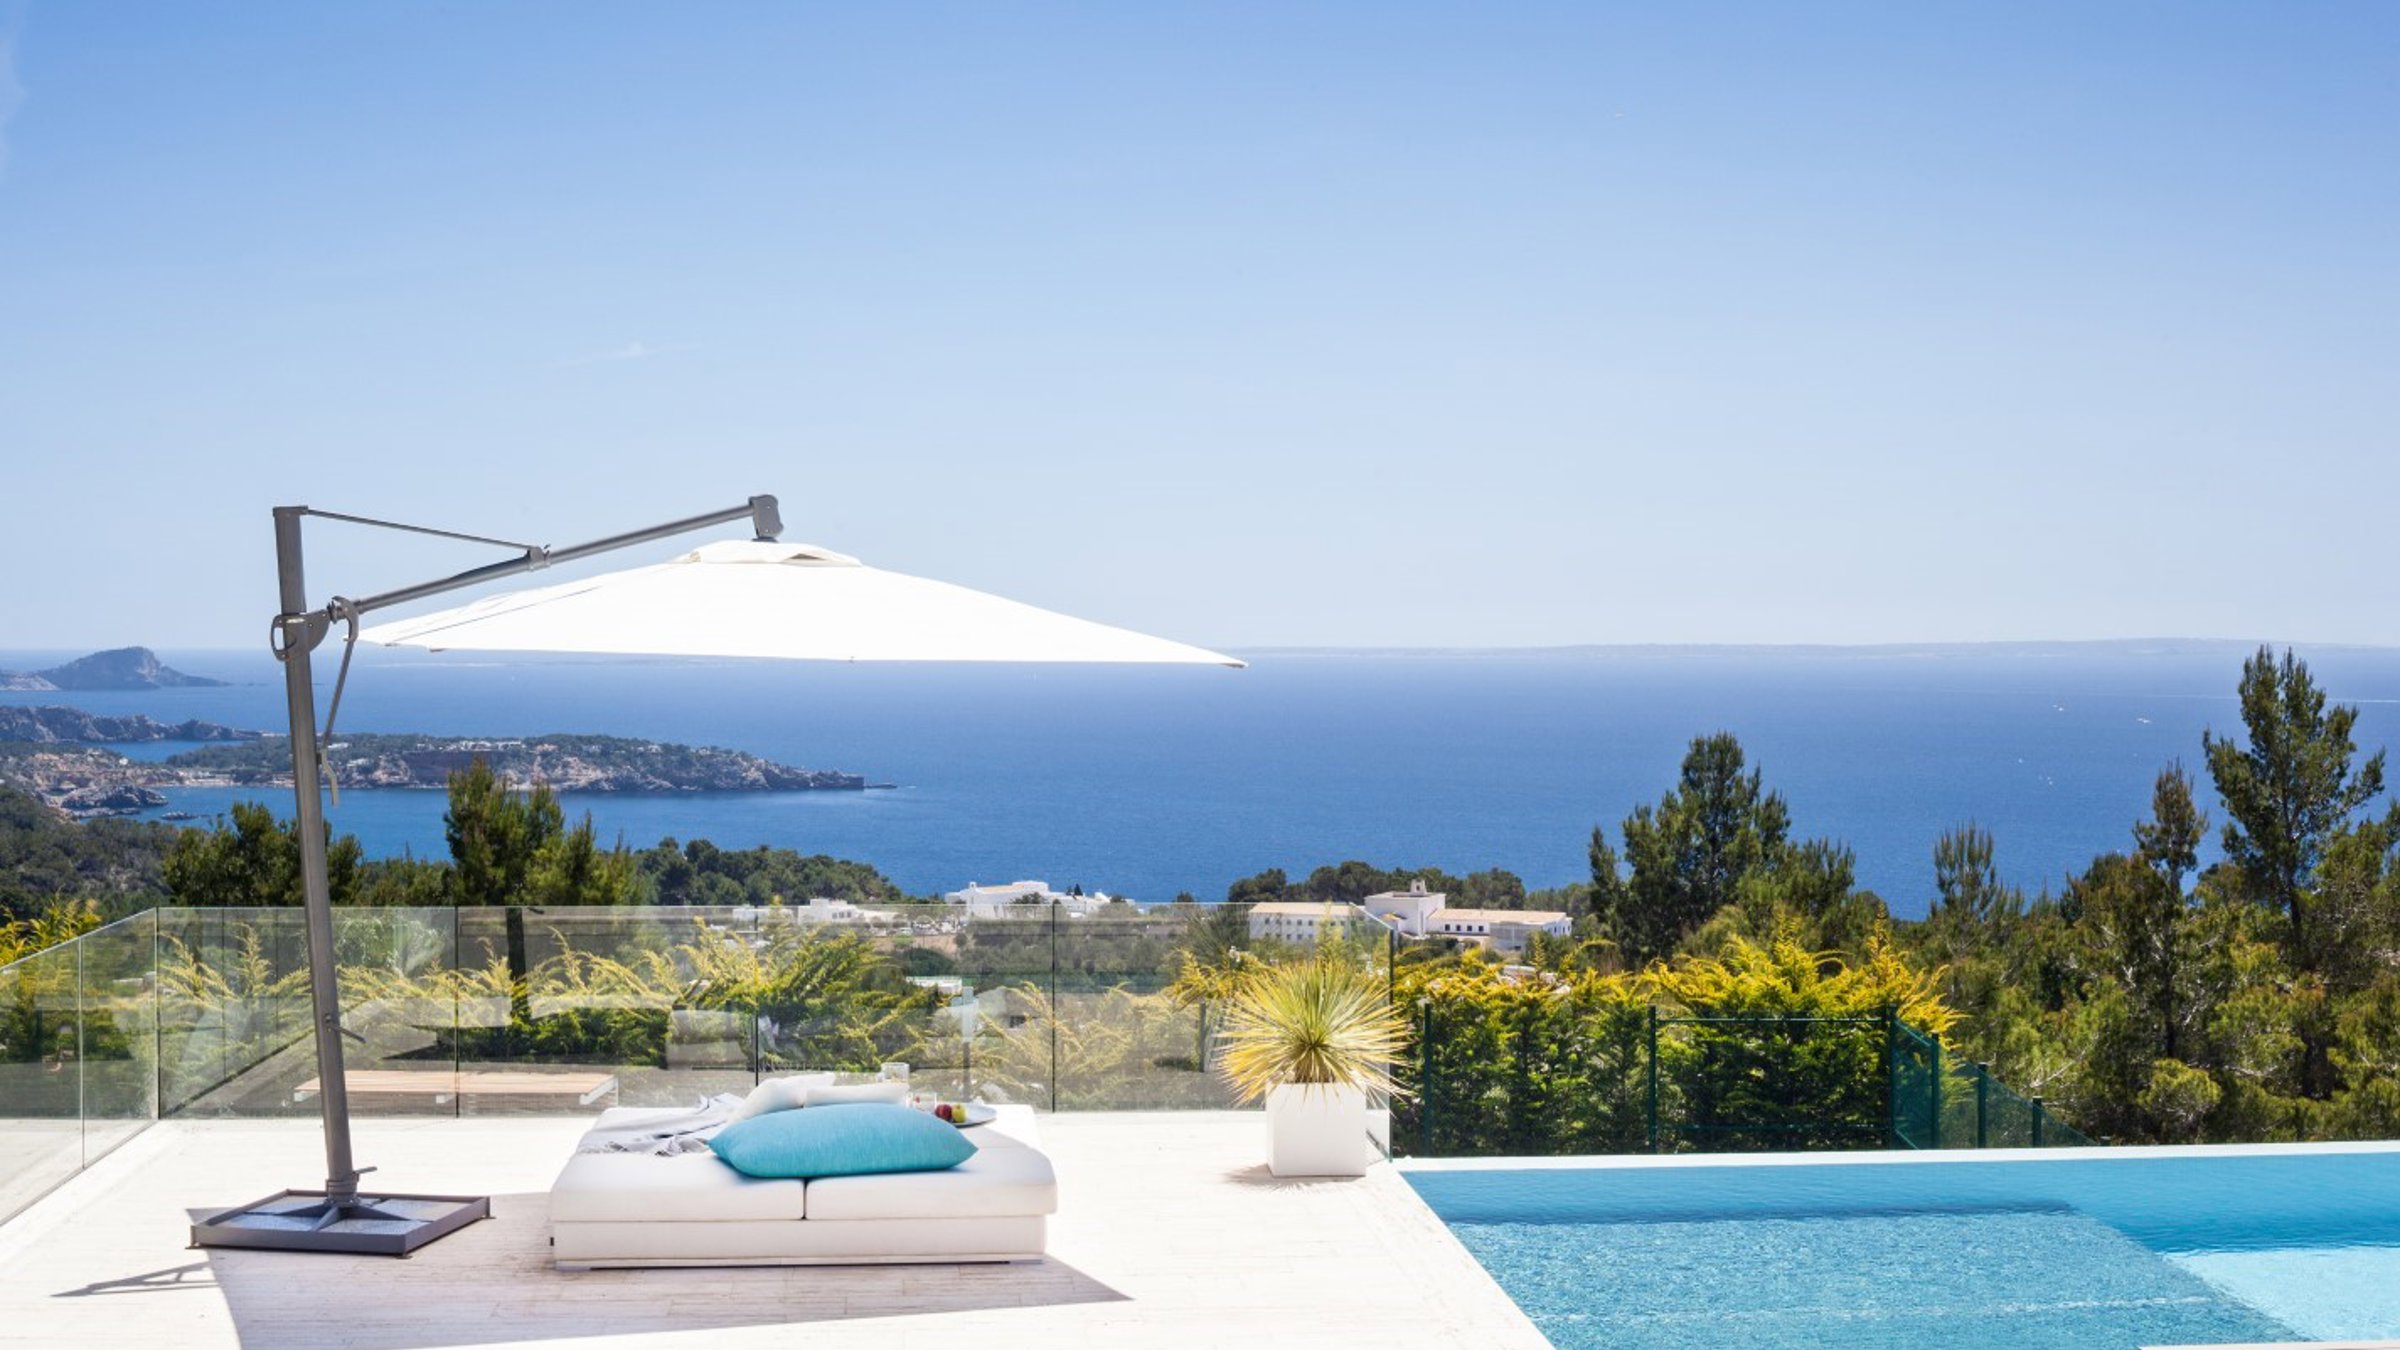 Our Top Villa Destinations in Ibiza